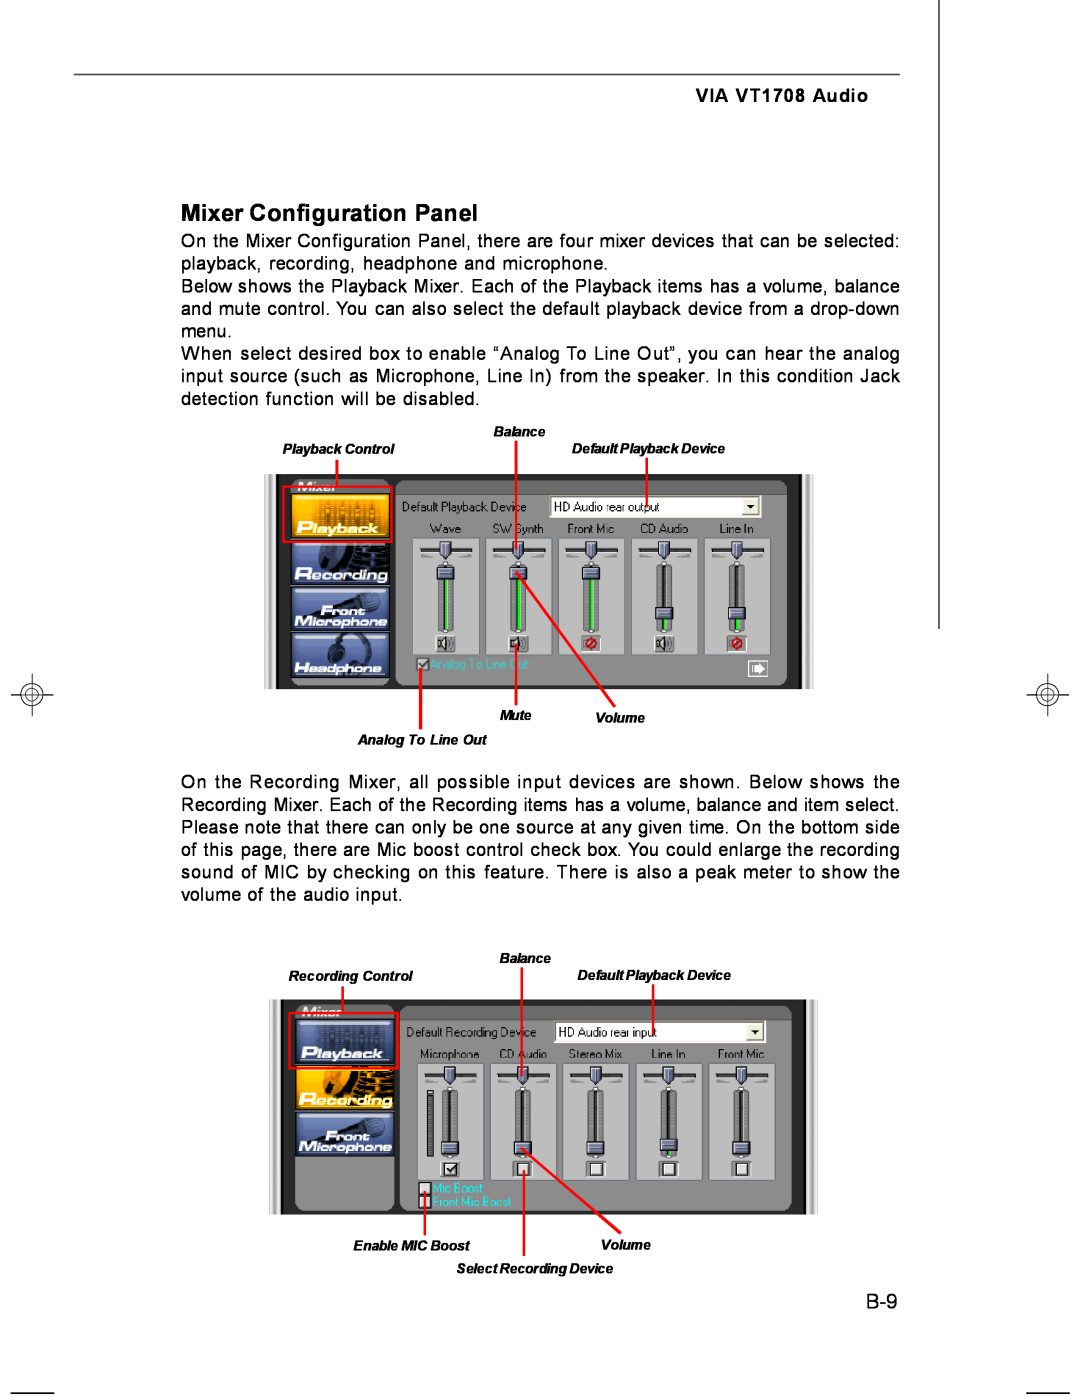 MSI MS-7255 manual Mixer Configuration Panel, VIA VT1708 Audio 